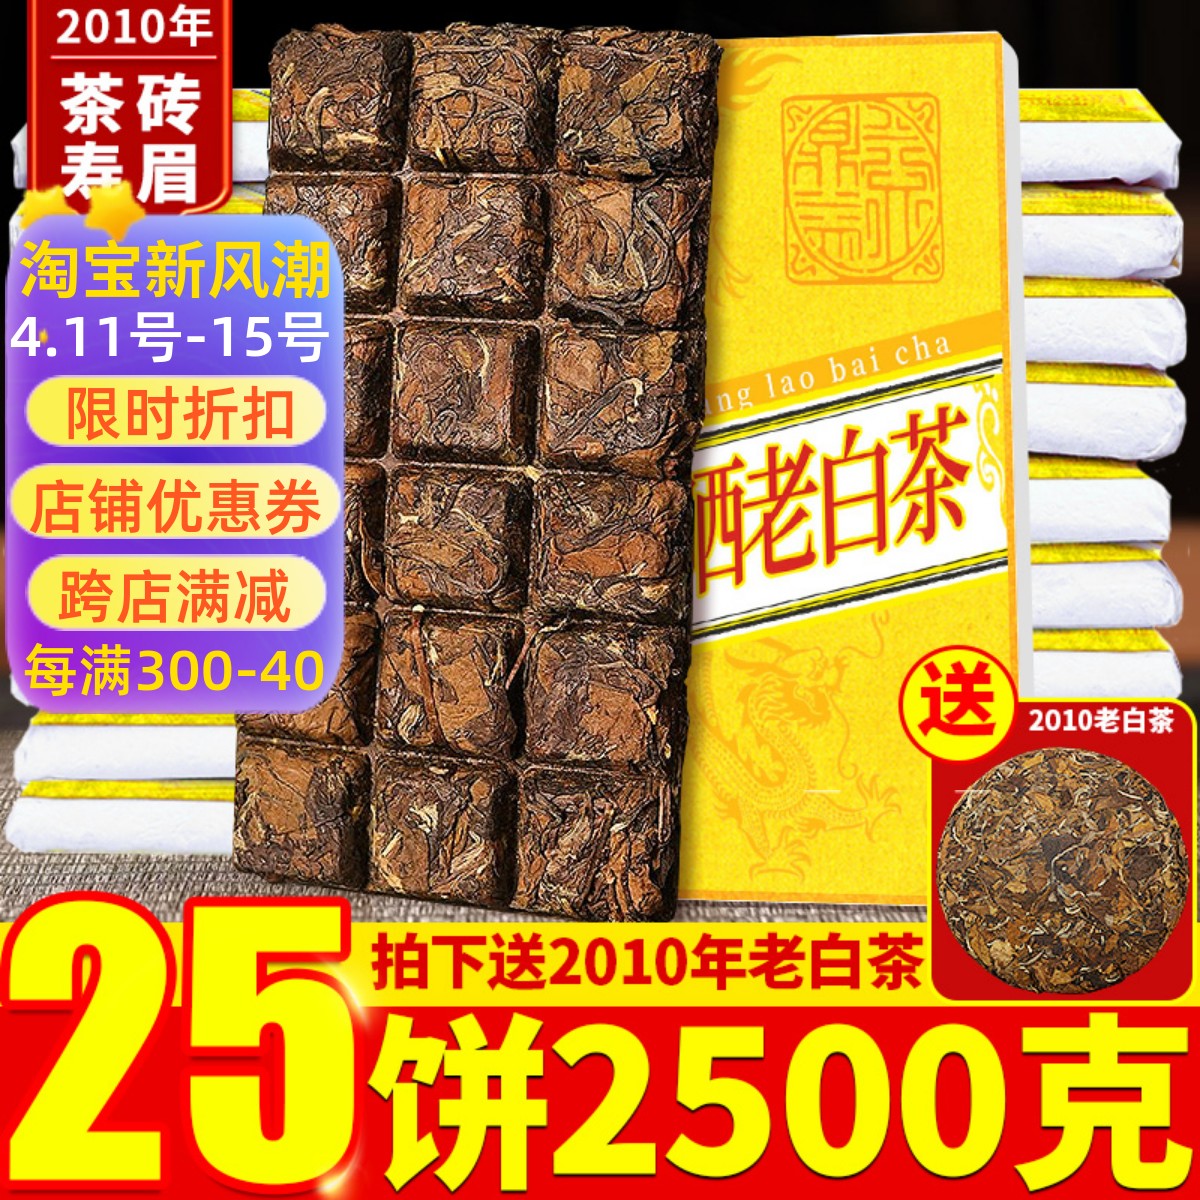 25片2010年陈香福鼎荒山老白茶饼寿眉方片巧克力茶砖白茶叶2500g